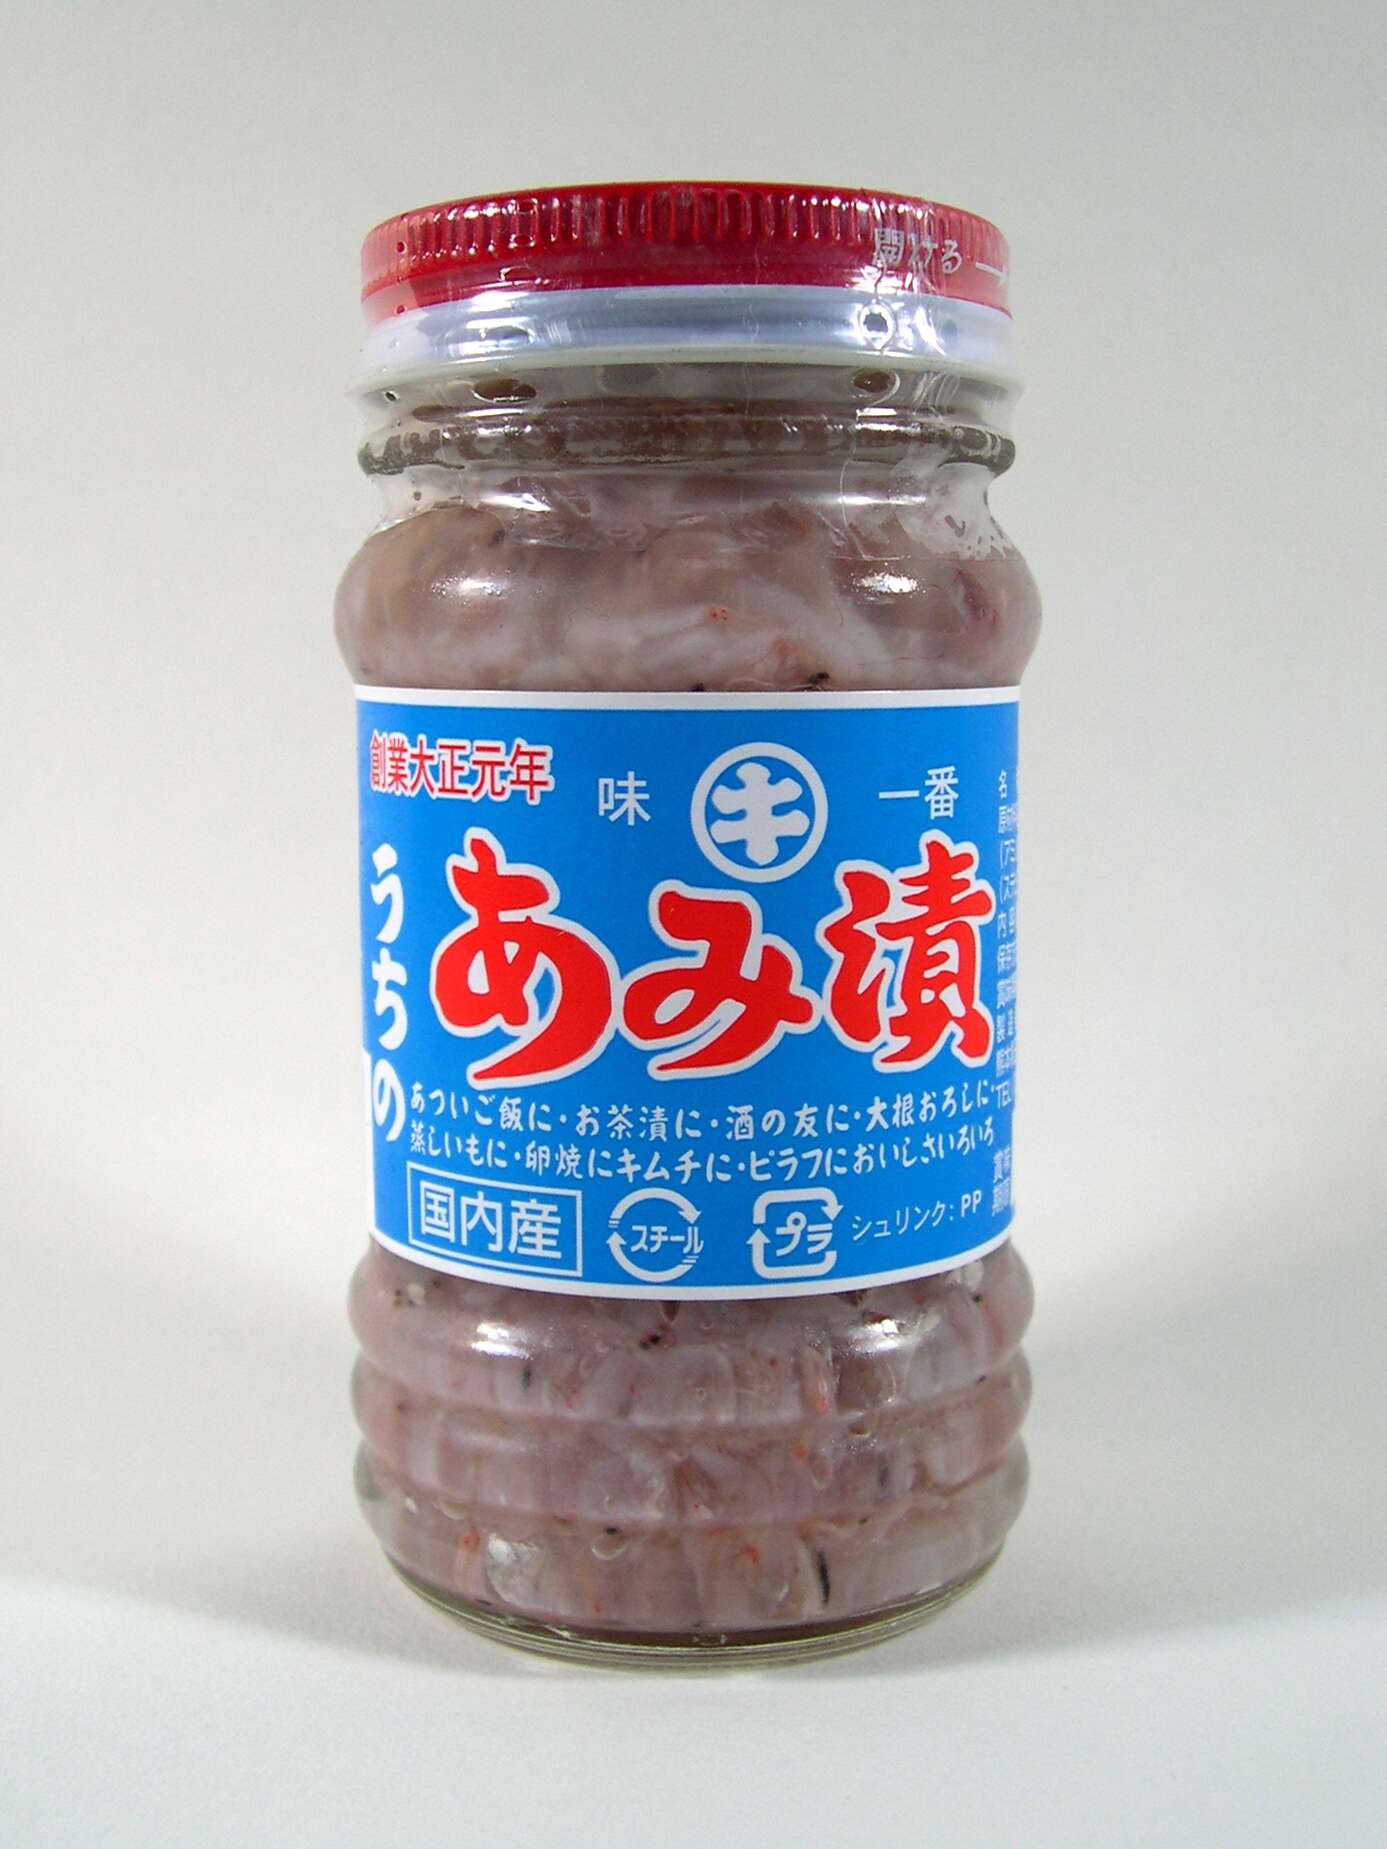 Image of Akiami paste shrimp